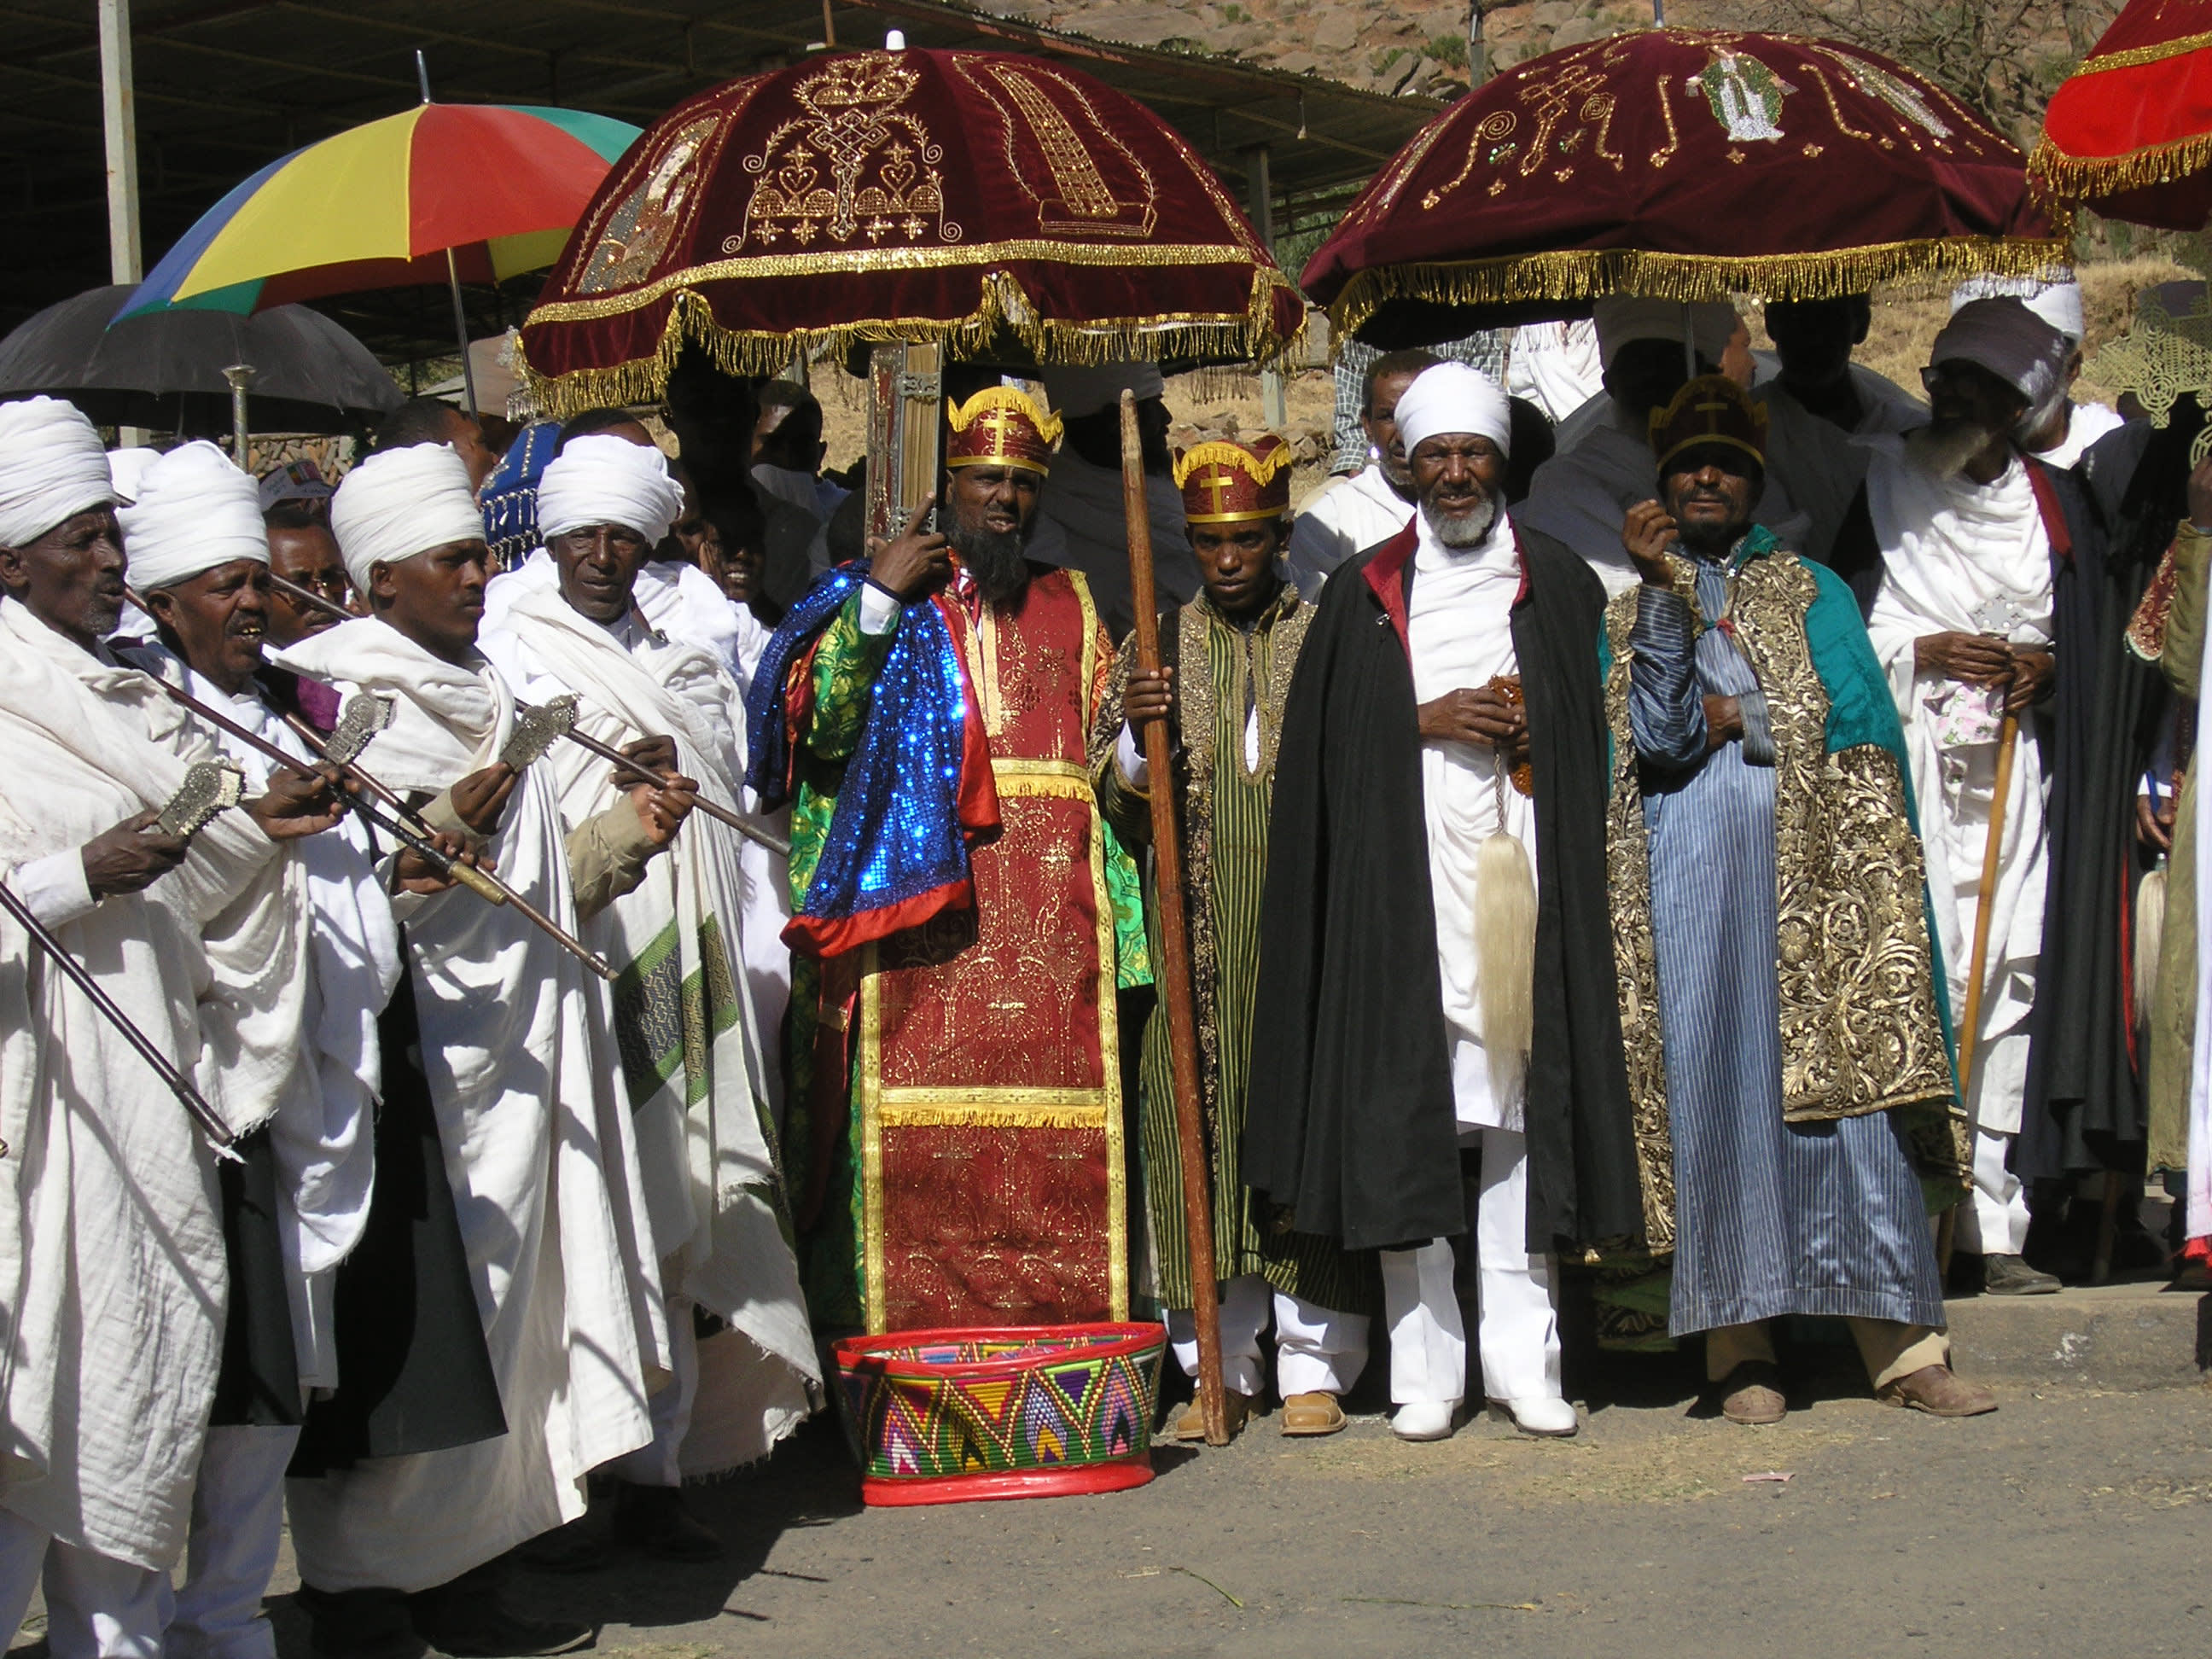 Timkat Festival in Ethiopia